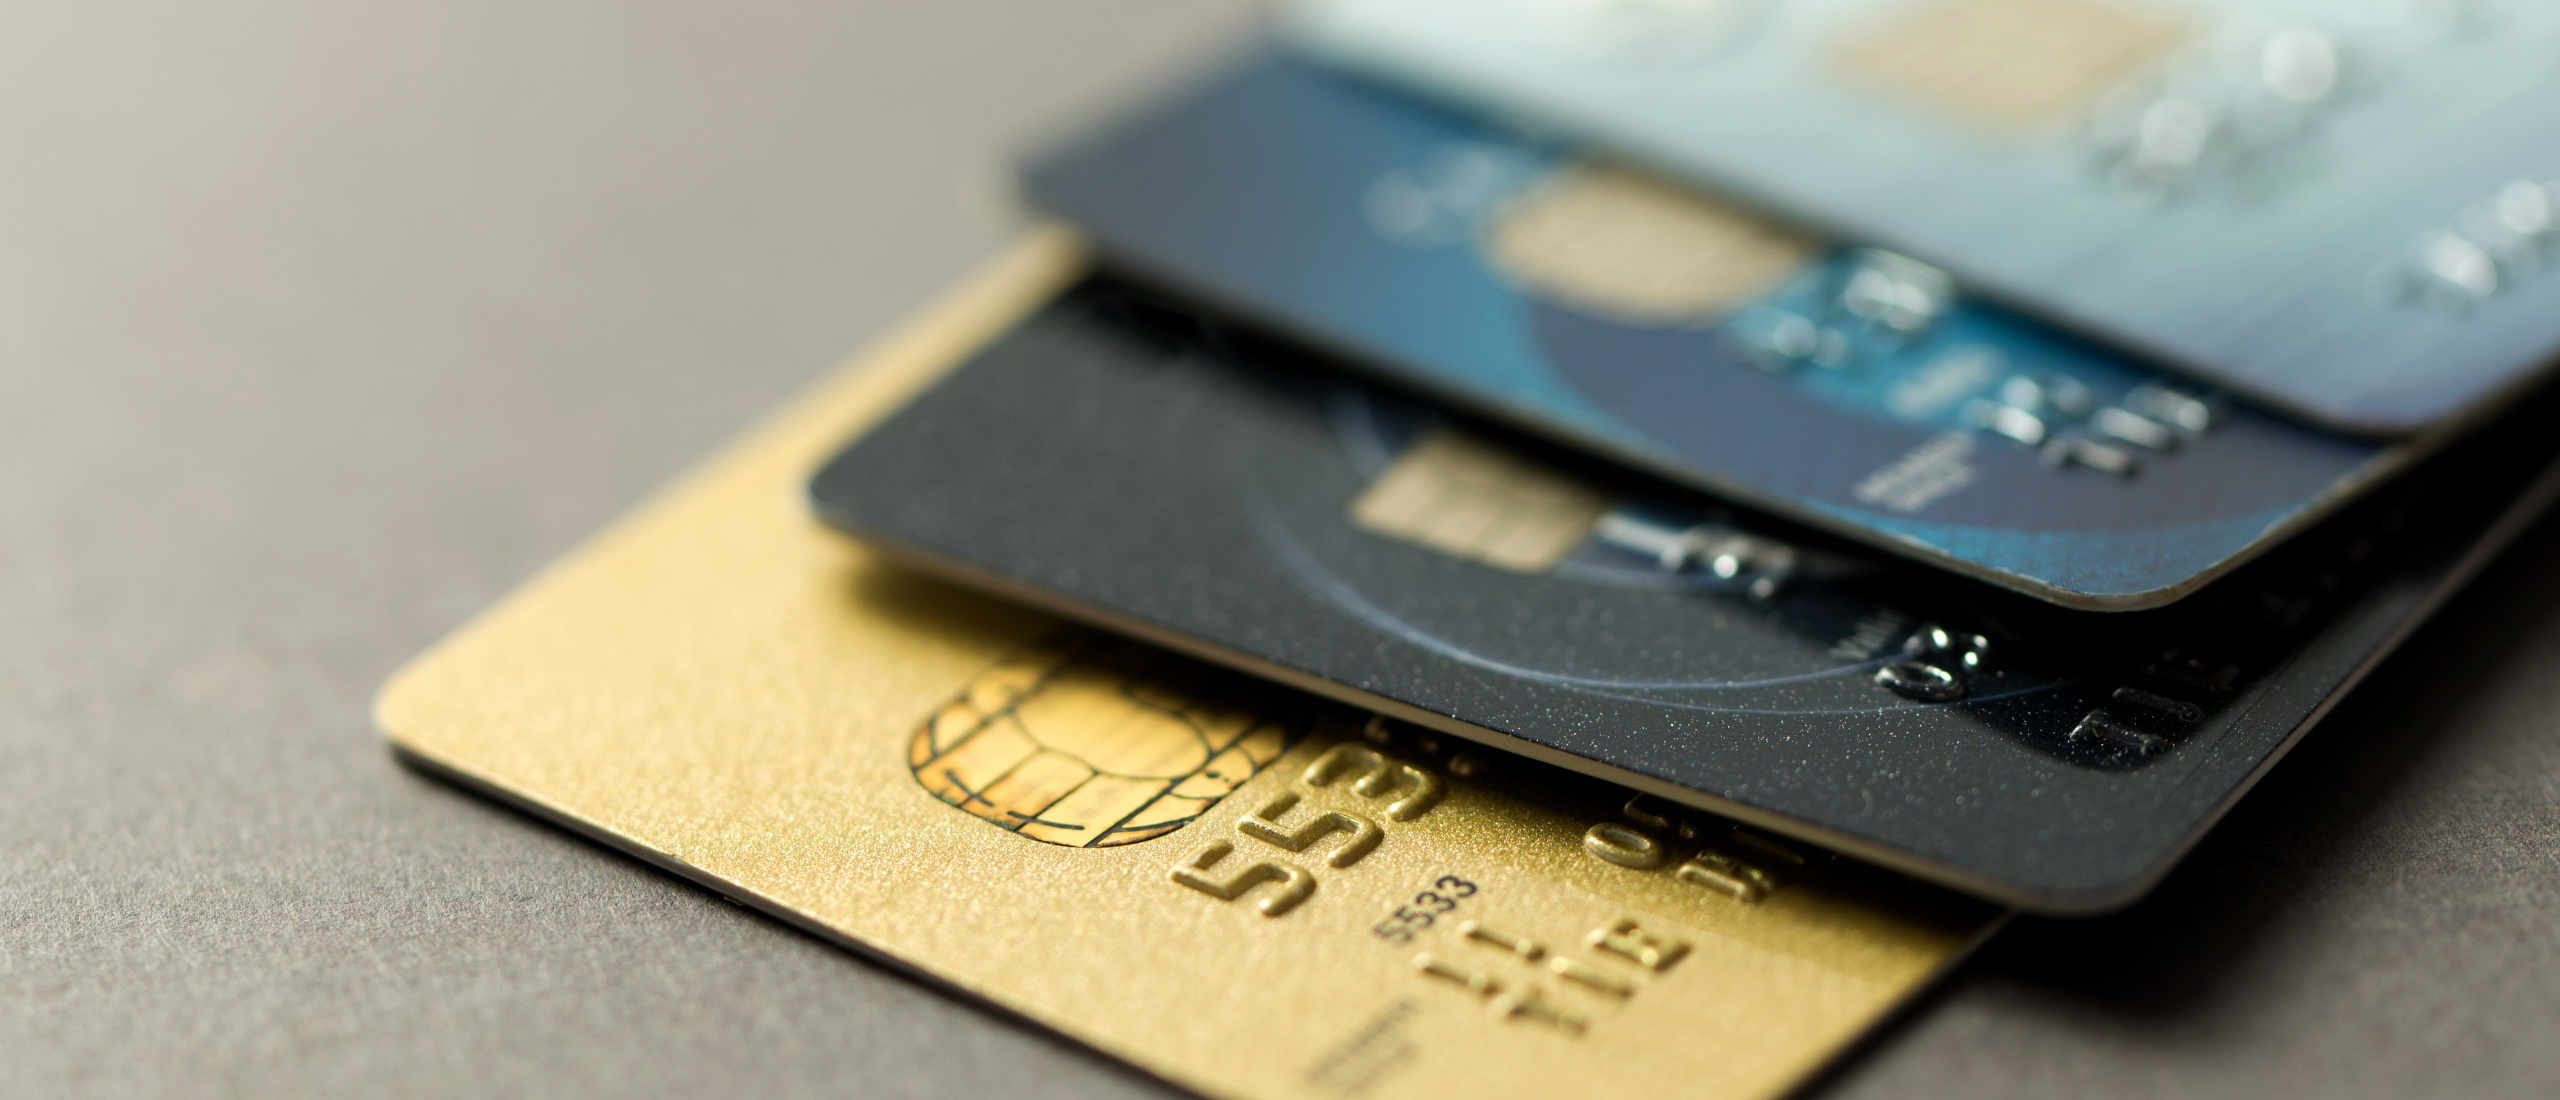 Is een virtuele debitcard gelijkwaardig aan een creditcard?